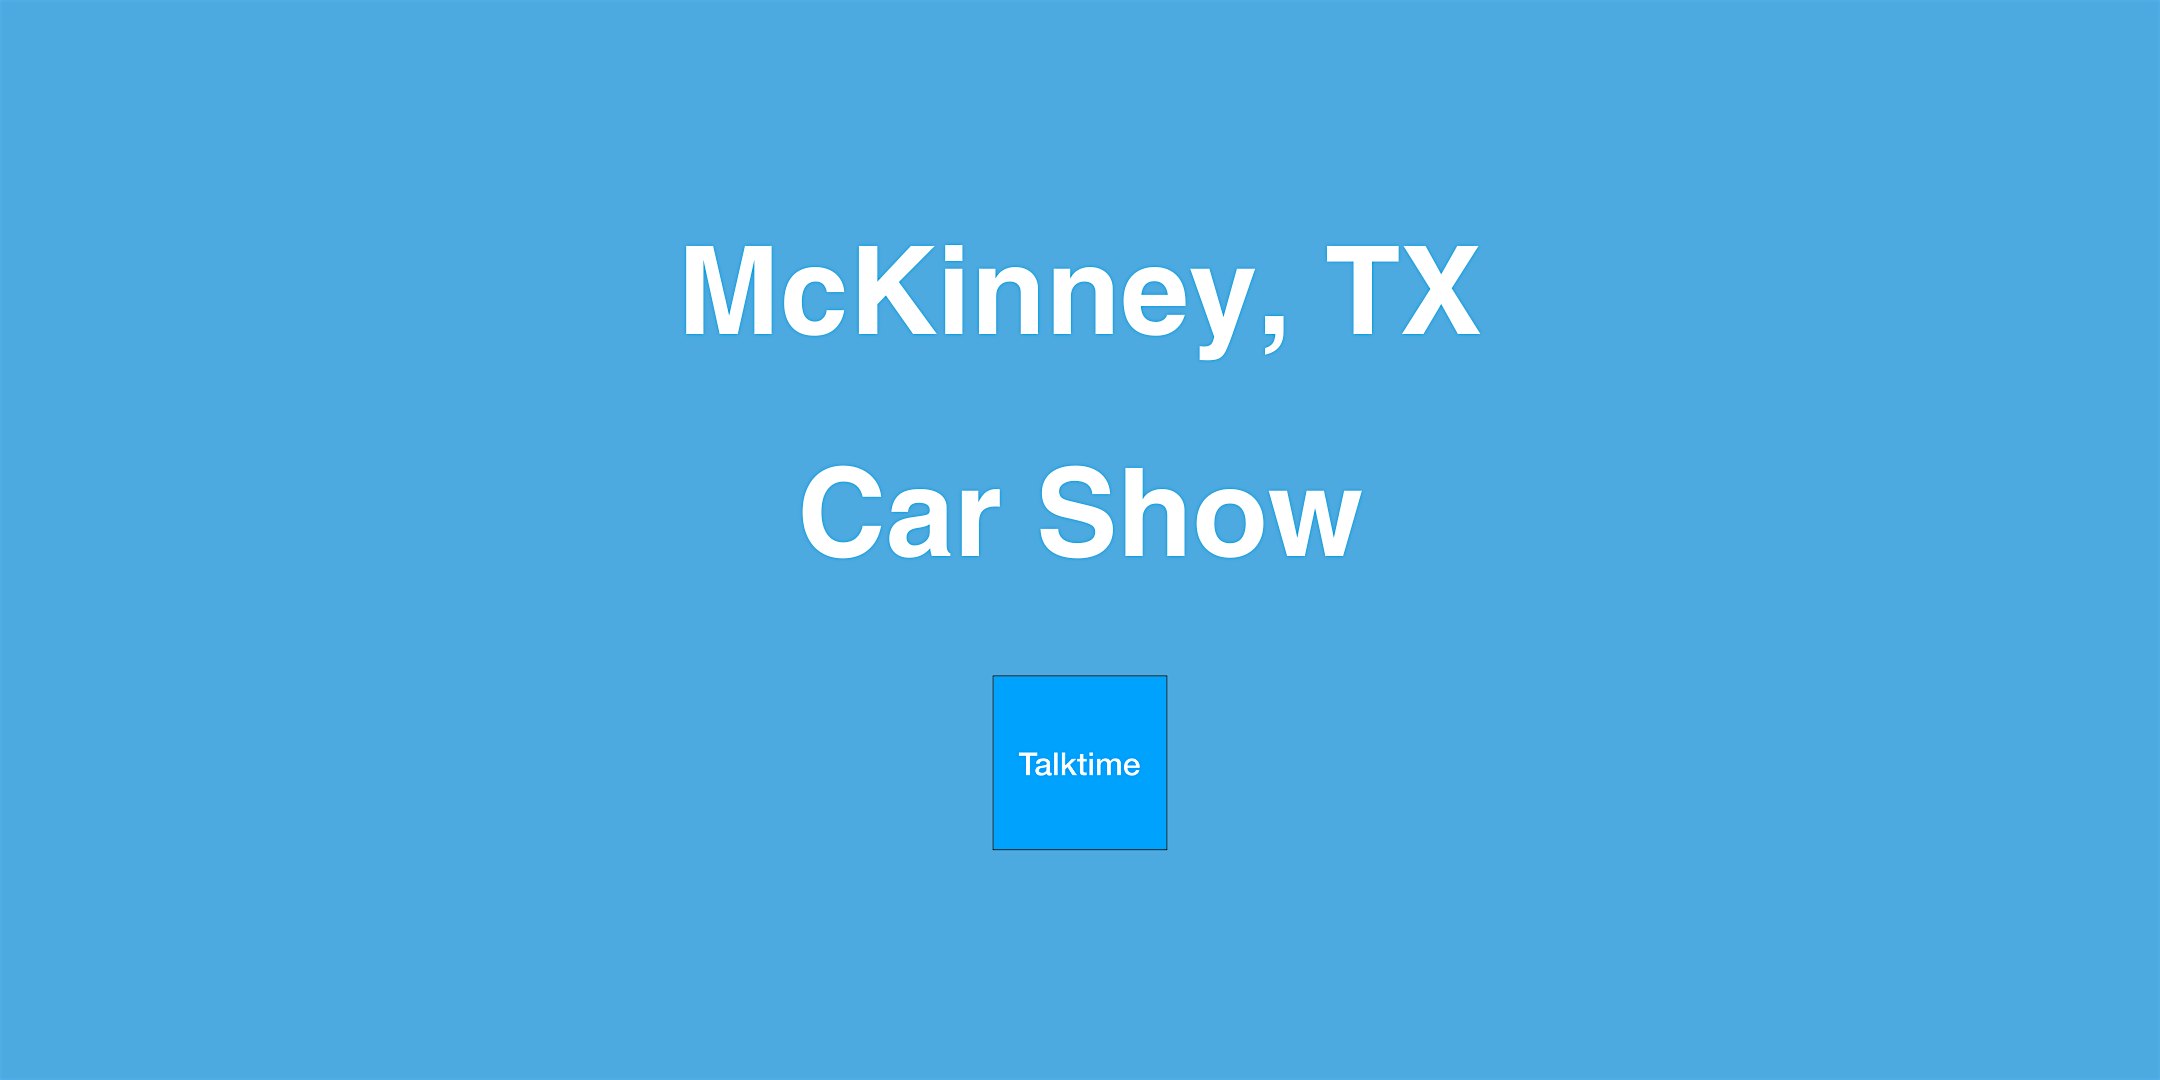 Car Show - McKinney